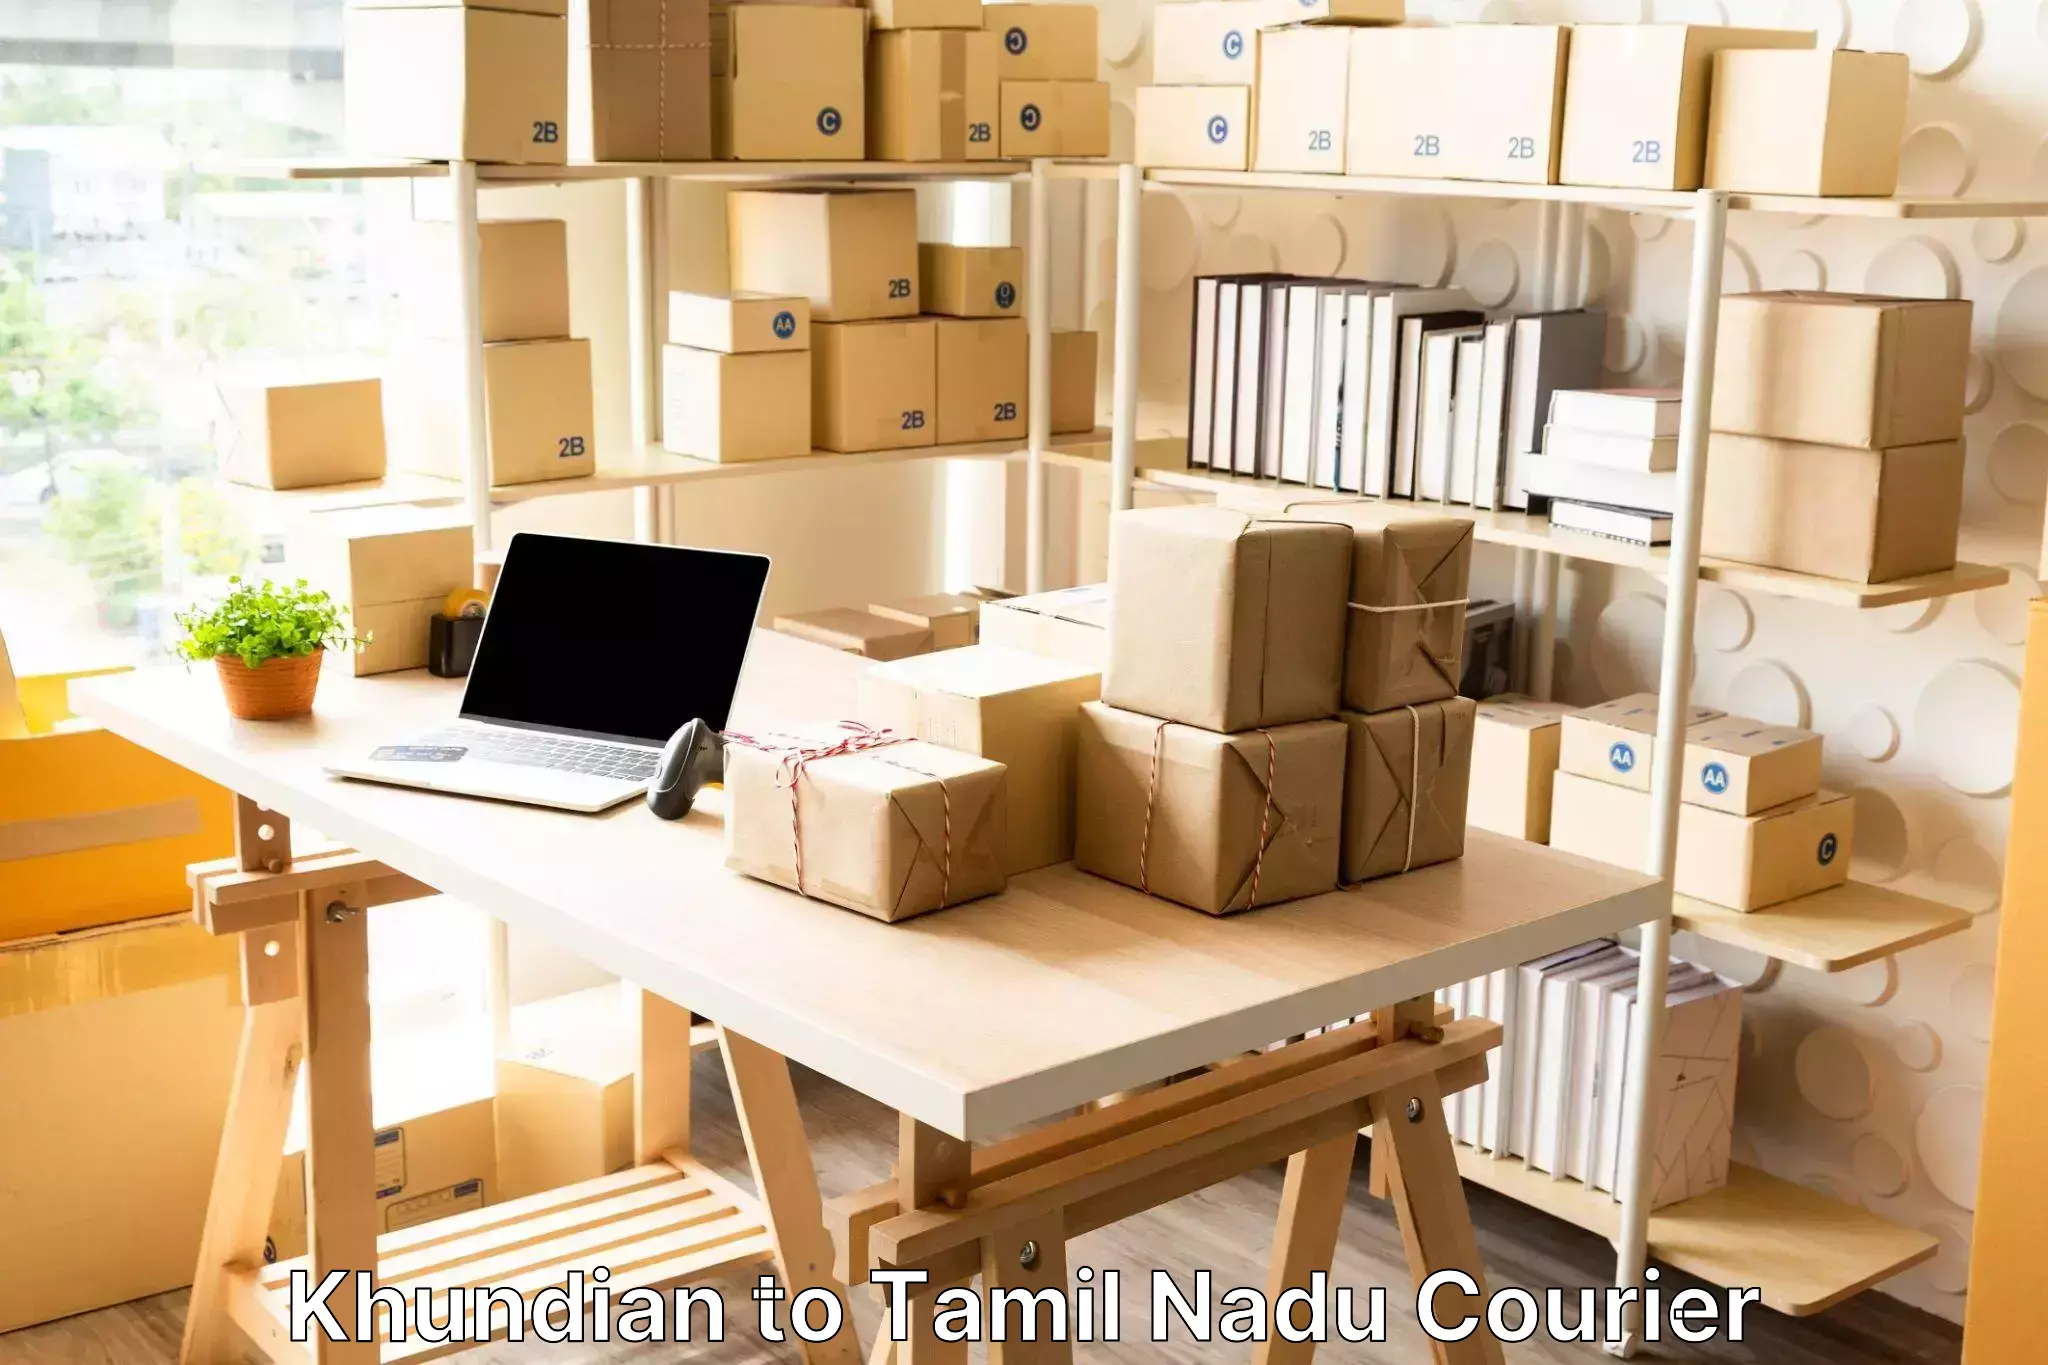 Door to door luggage delivery Khundian to Tamil Nadu